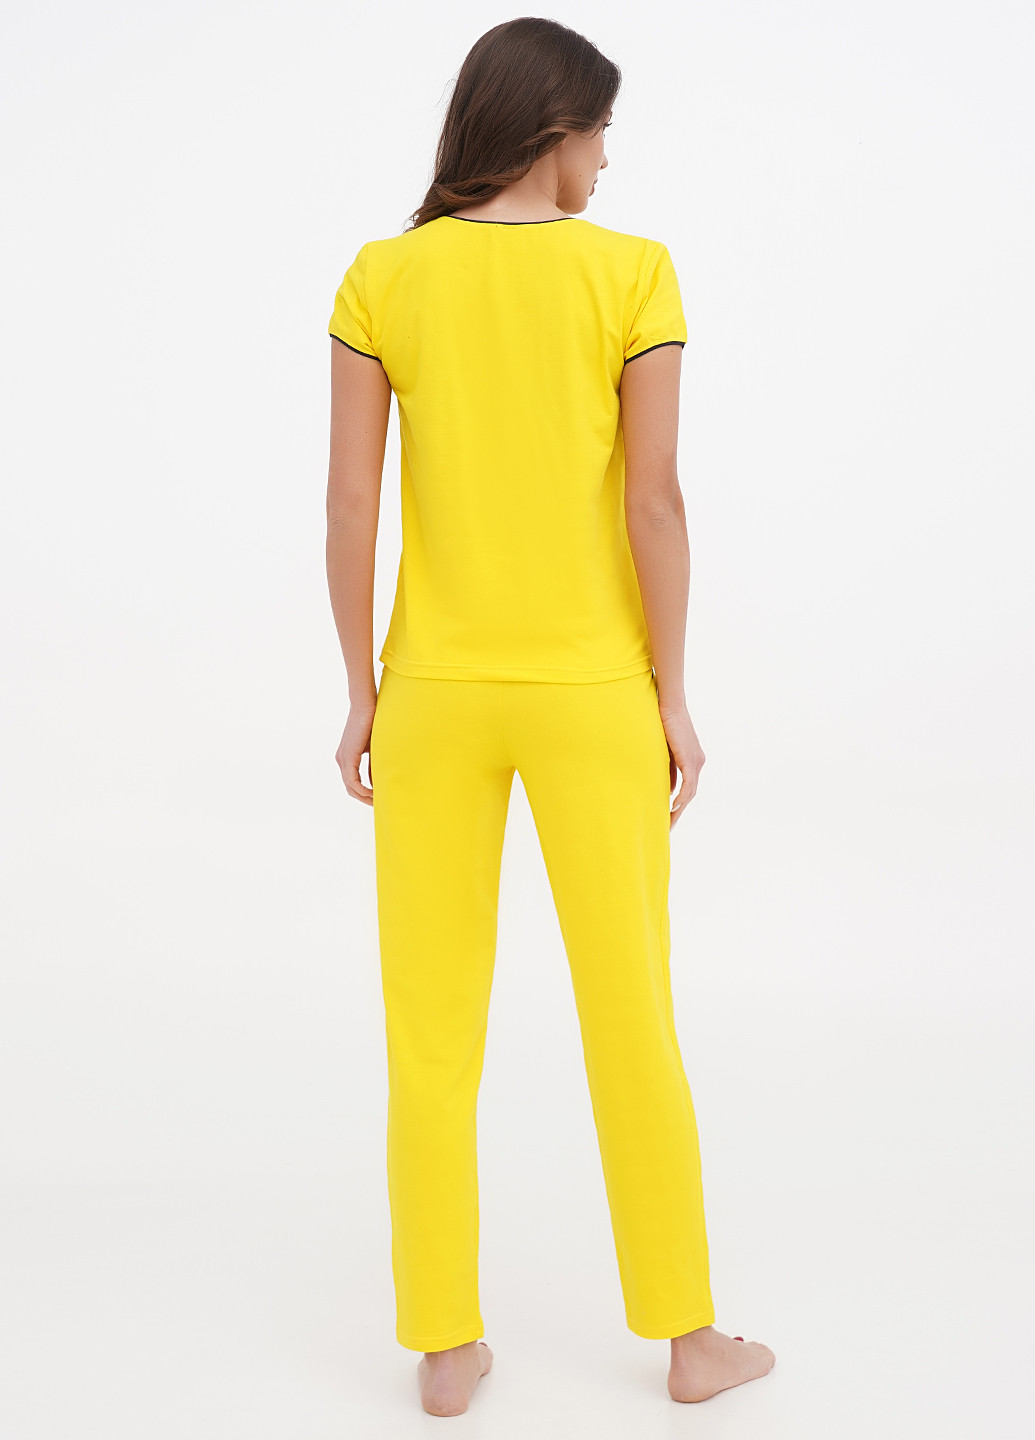 Желтая всесезон пижама (футболка, брюки) футболка + брюки Lucci